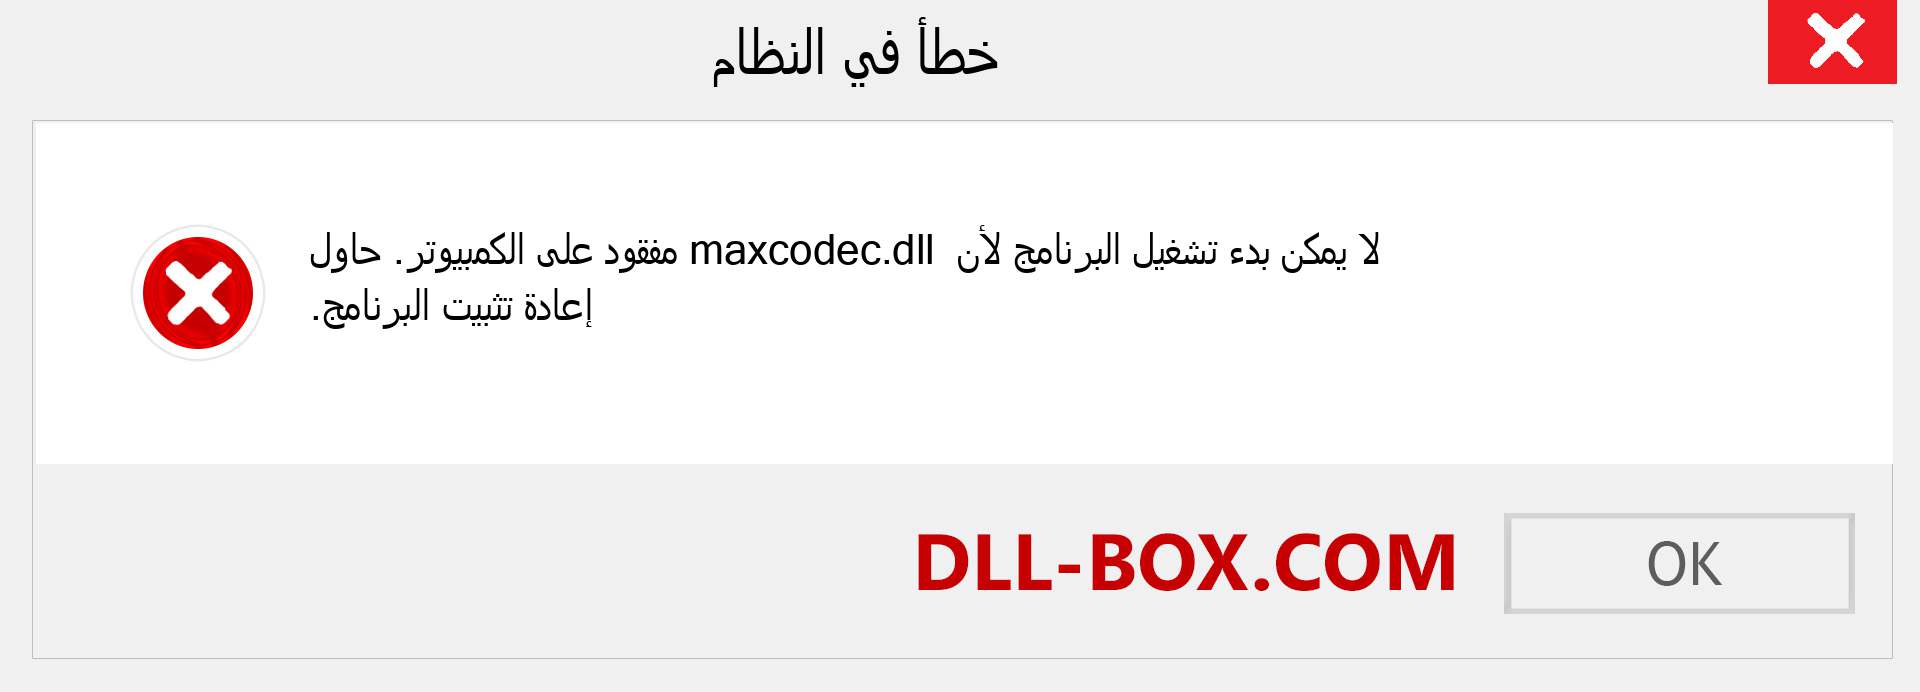 ملف maxcodec.dll مفقود ؟. التنزيل لنظام التشغيل Windows 7 و 8 و 10 - إصلاح خطأ maxcodec dll المفقود على Windows والصور والصور